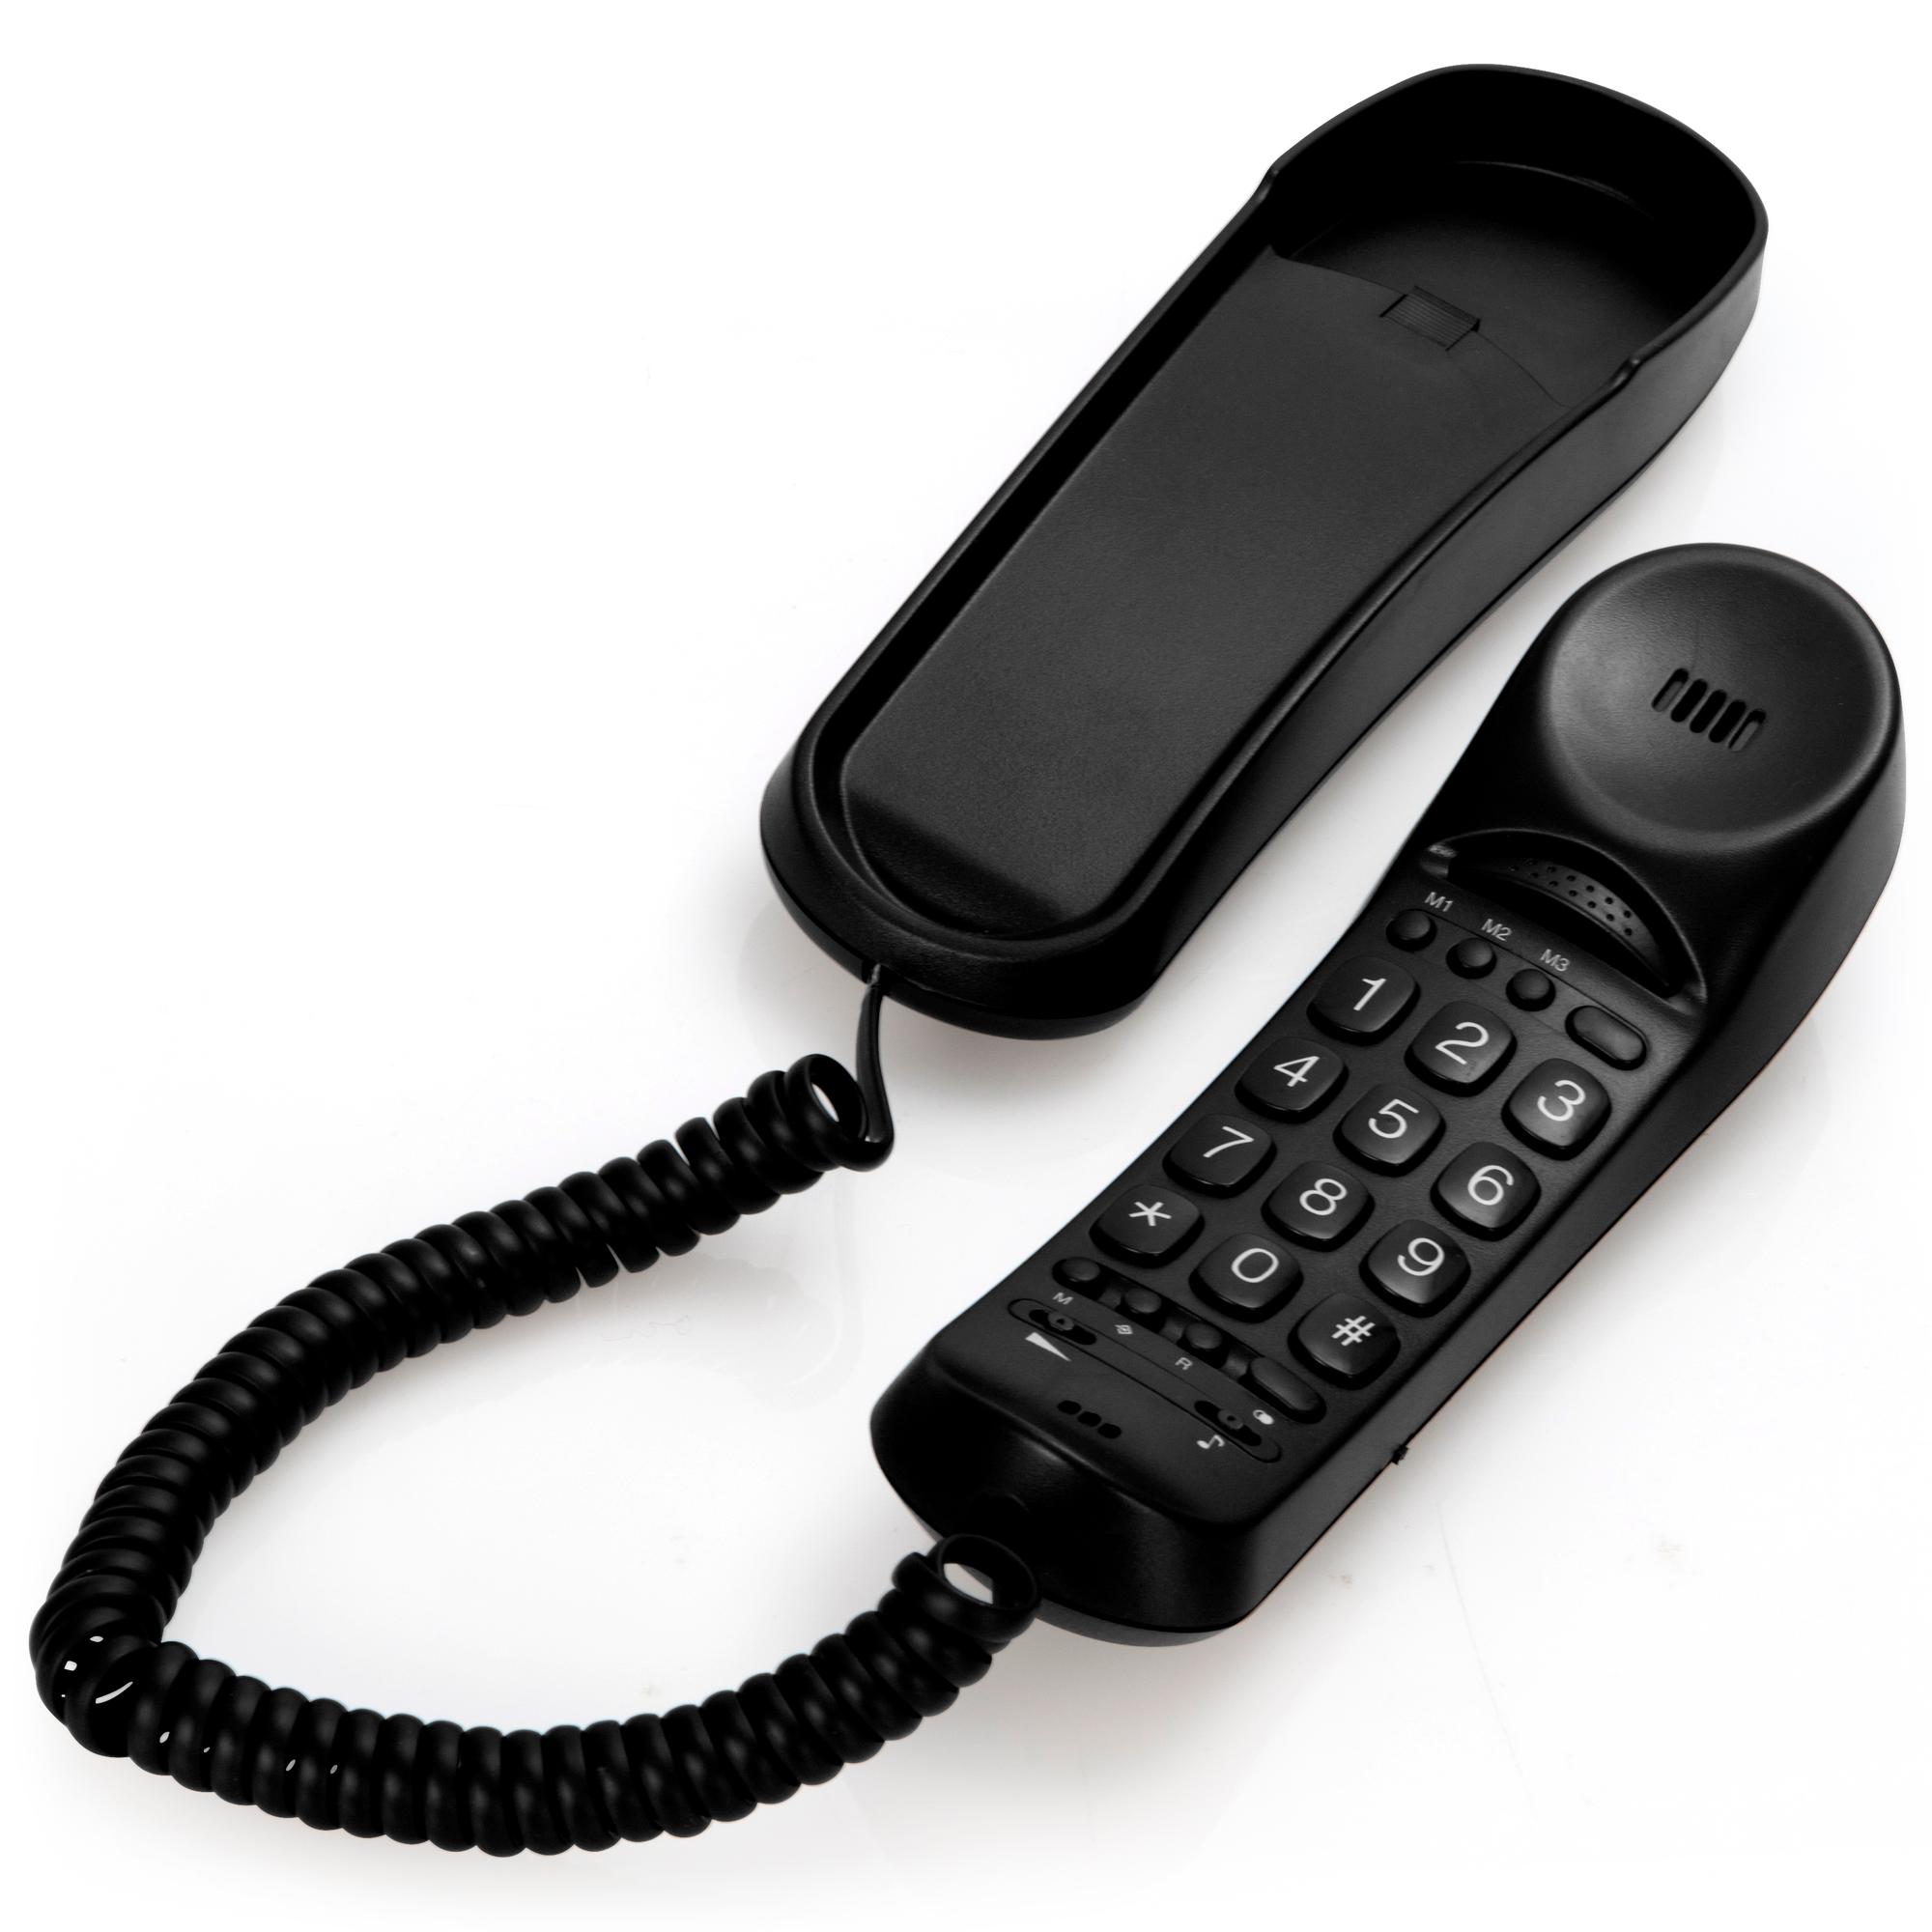 FYSIC FX-2800 - kompaktes schnurgebundenes und Tonverstärker mit Klingellampe Seniorentelefon